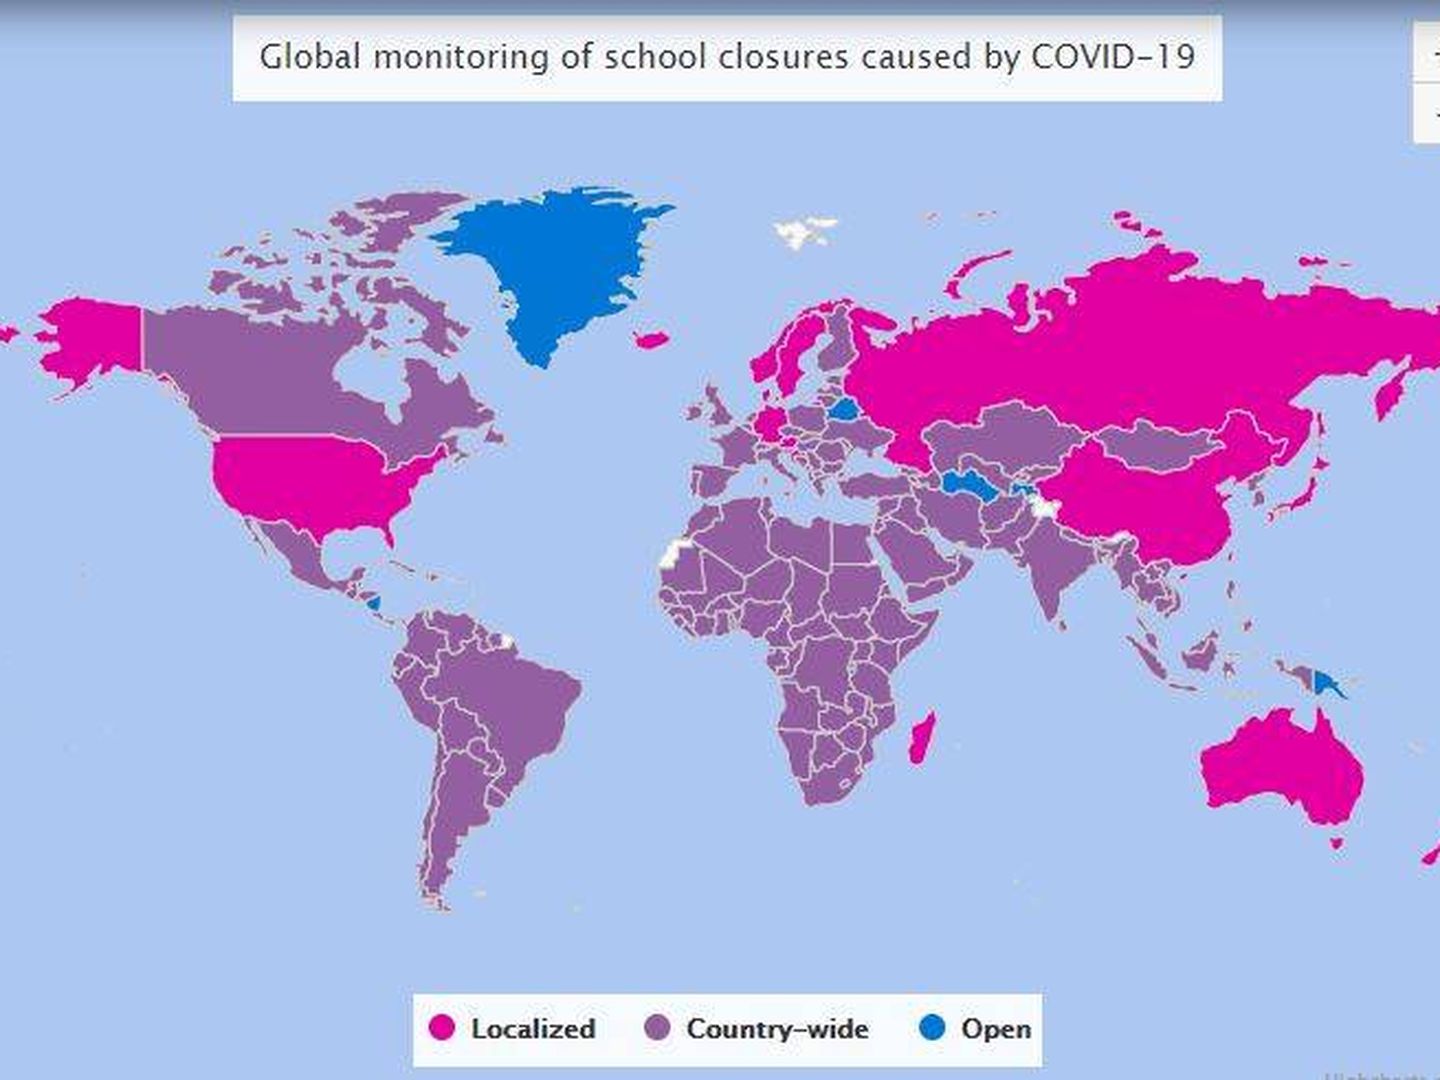 Cierres de escuelas en el mundo. En morado, totales. En fucsia, parciales. (UNESCO)